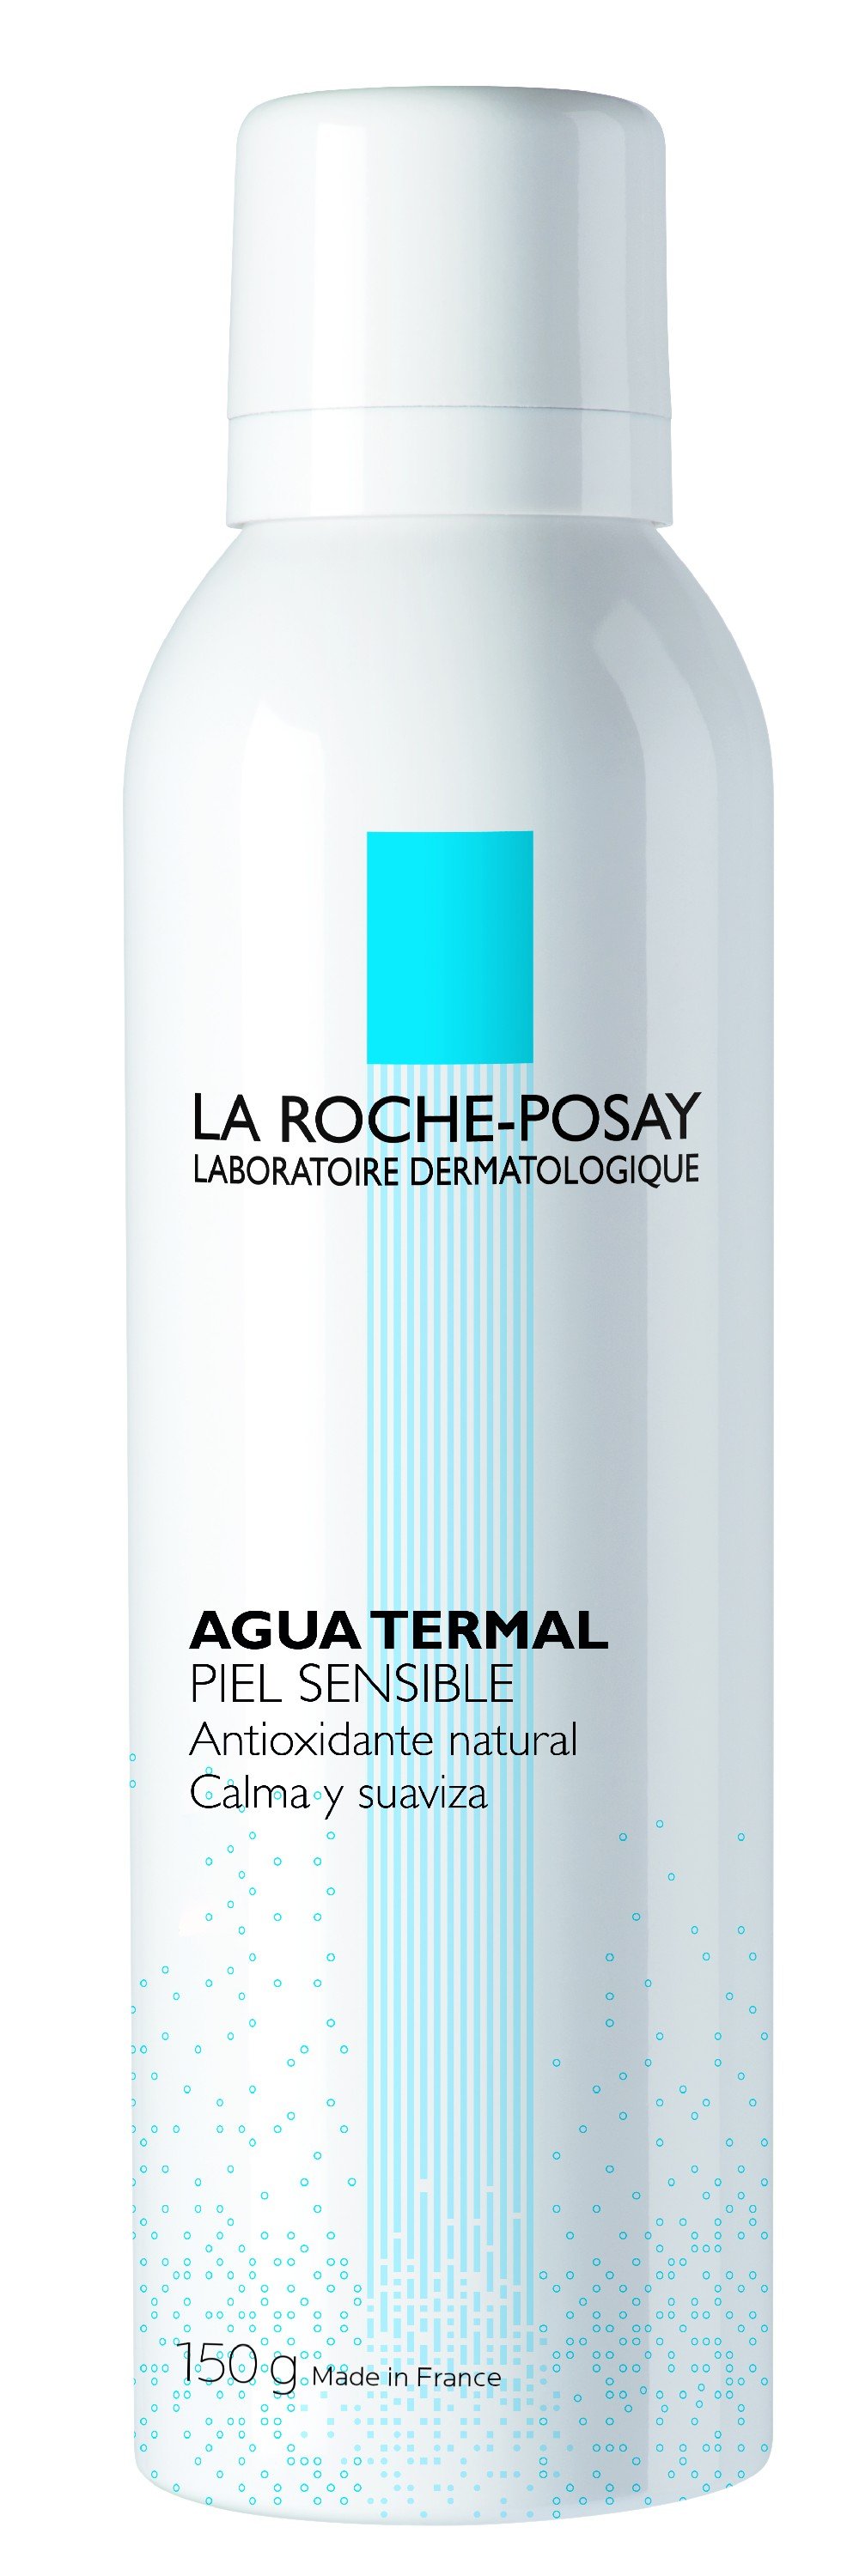 La Roche-Posay Agua Termal, 150g